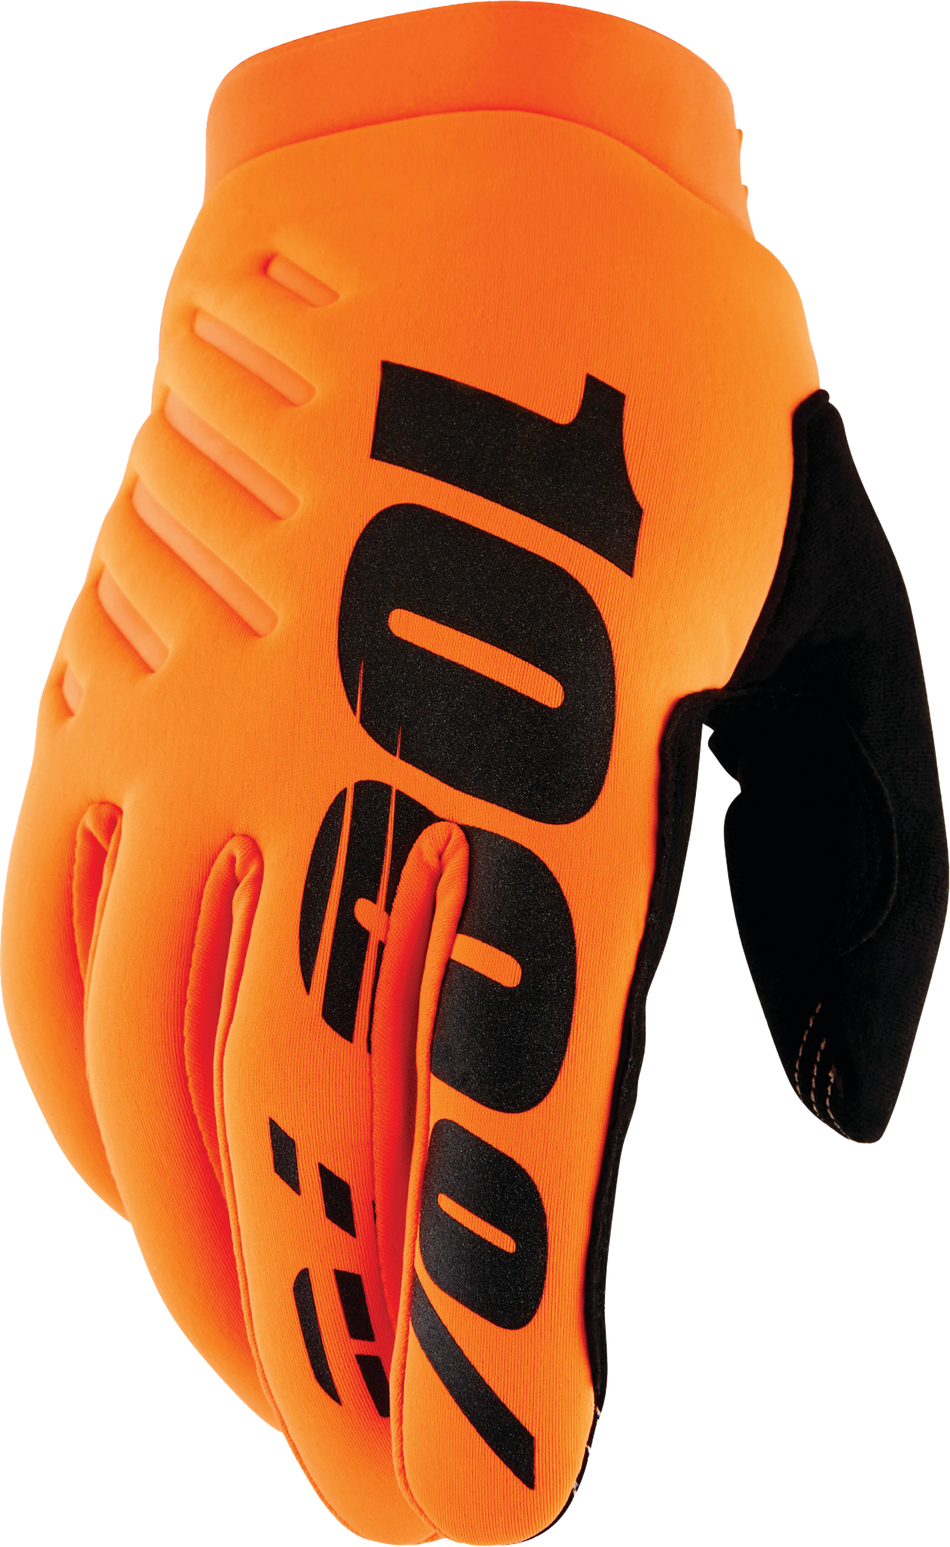 100% Brisker Youth Gloves Fluo Orange/Black Sm 10004-00004